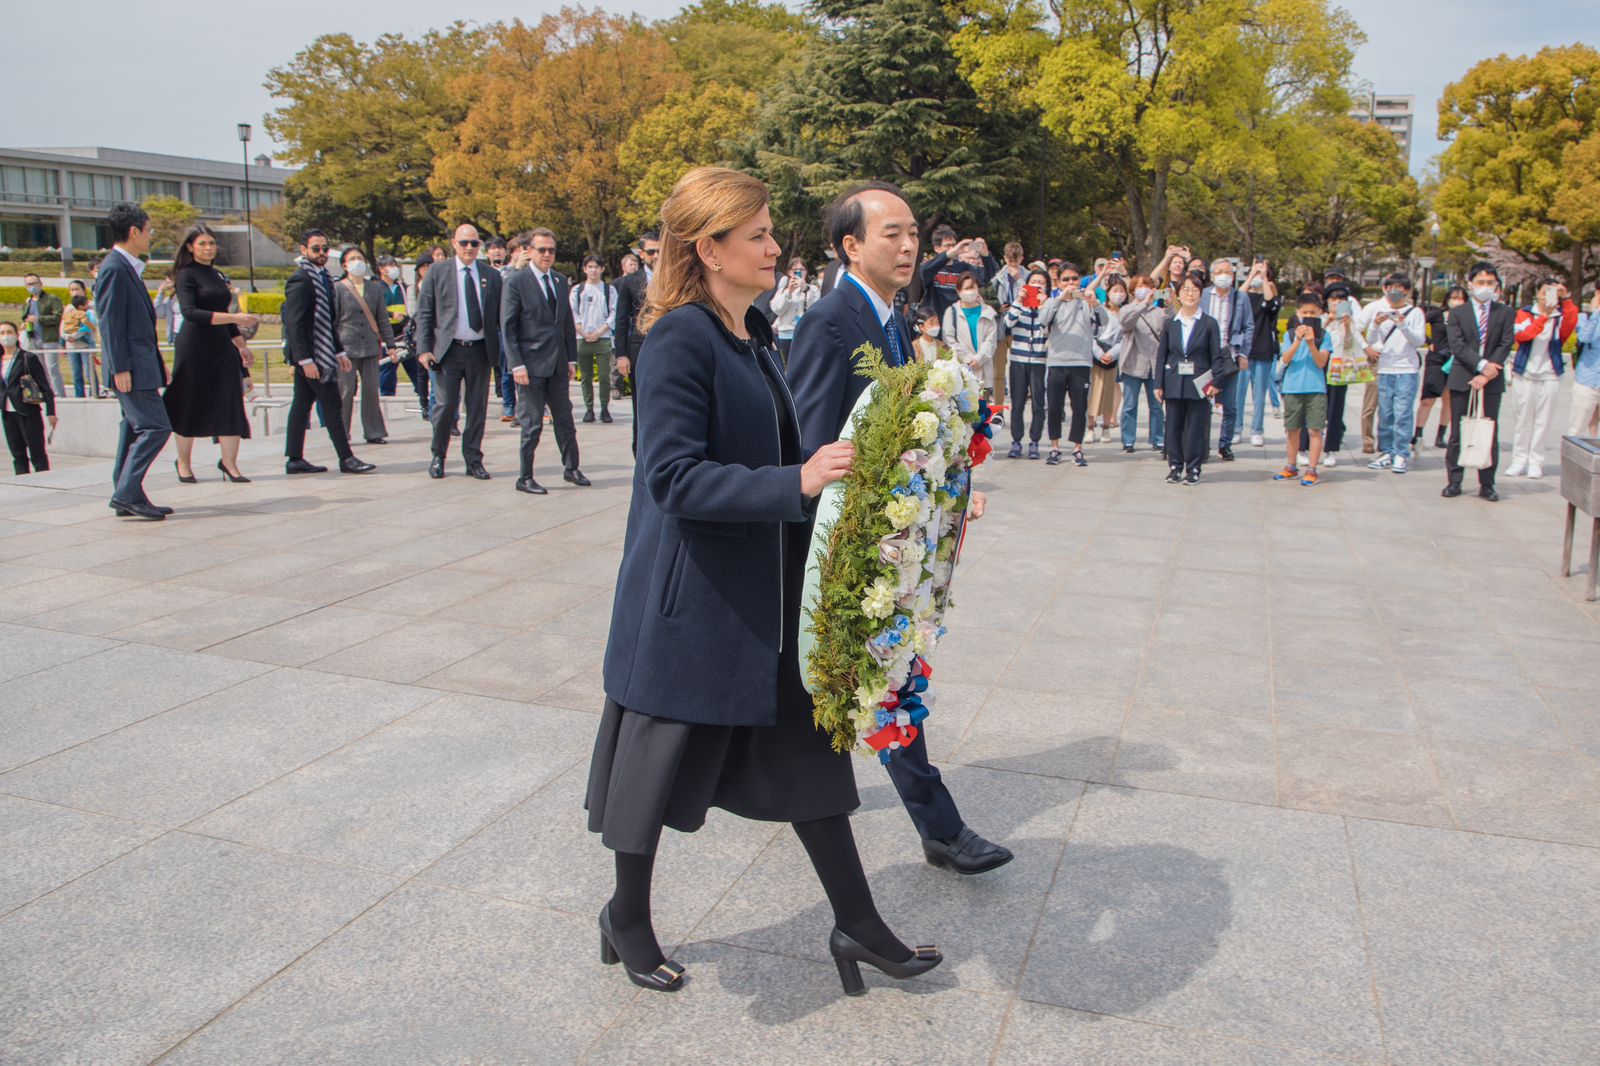 Vicepresidenta Raquel Peña Rinde Tributo a caídos por bomba atómica en Hiroshima